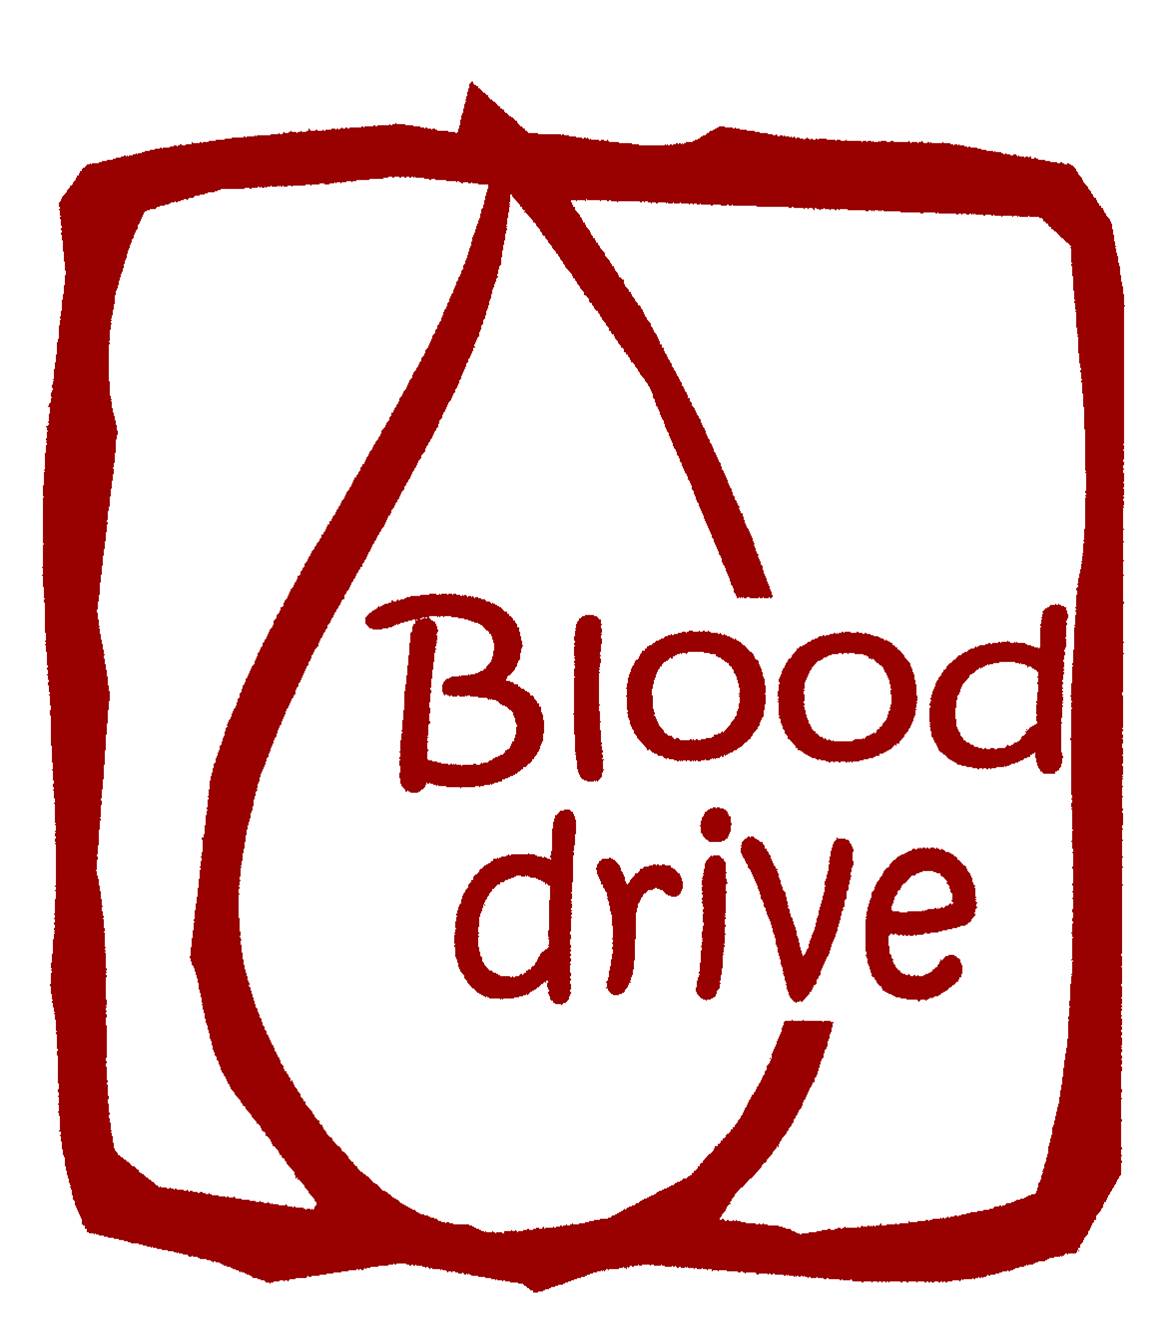 Blood Drive Images - ClipArt Best